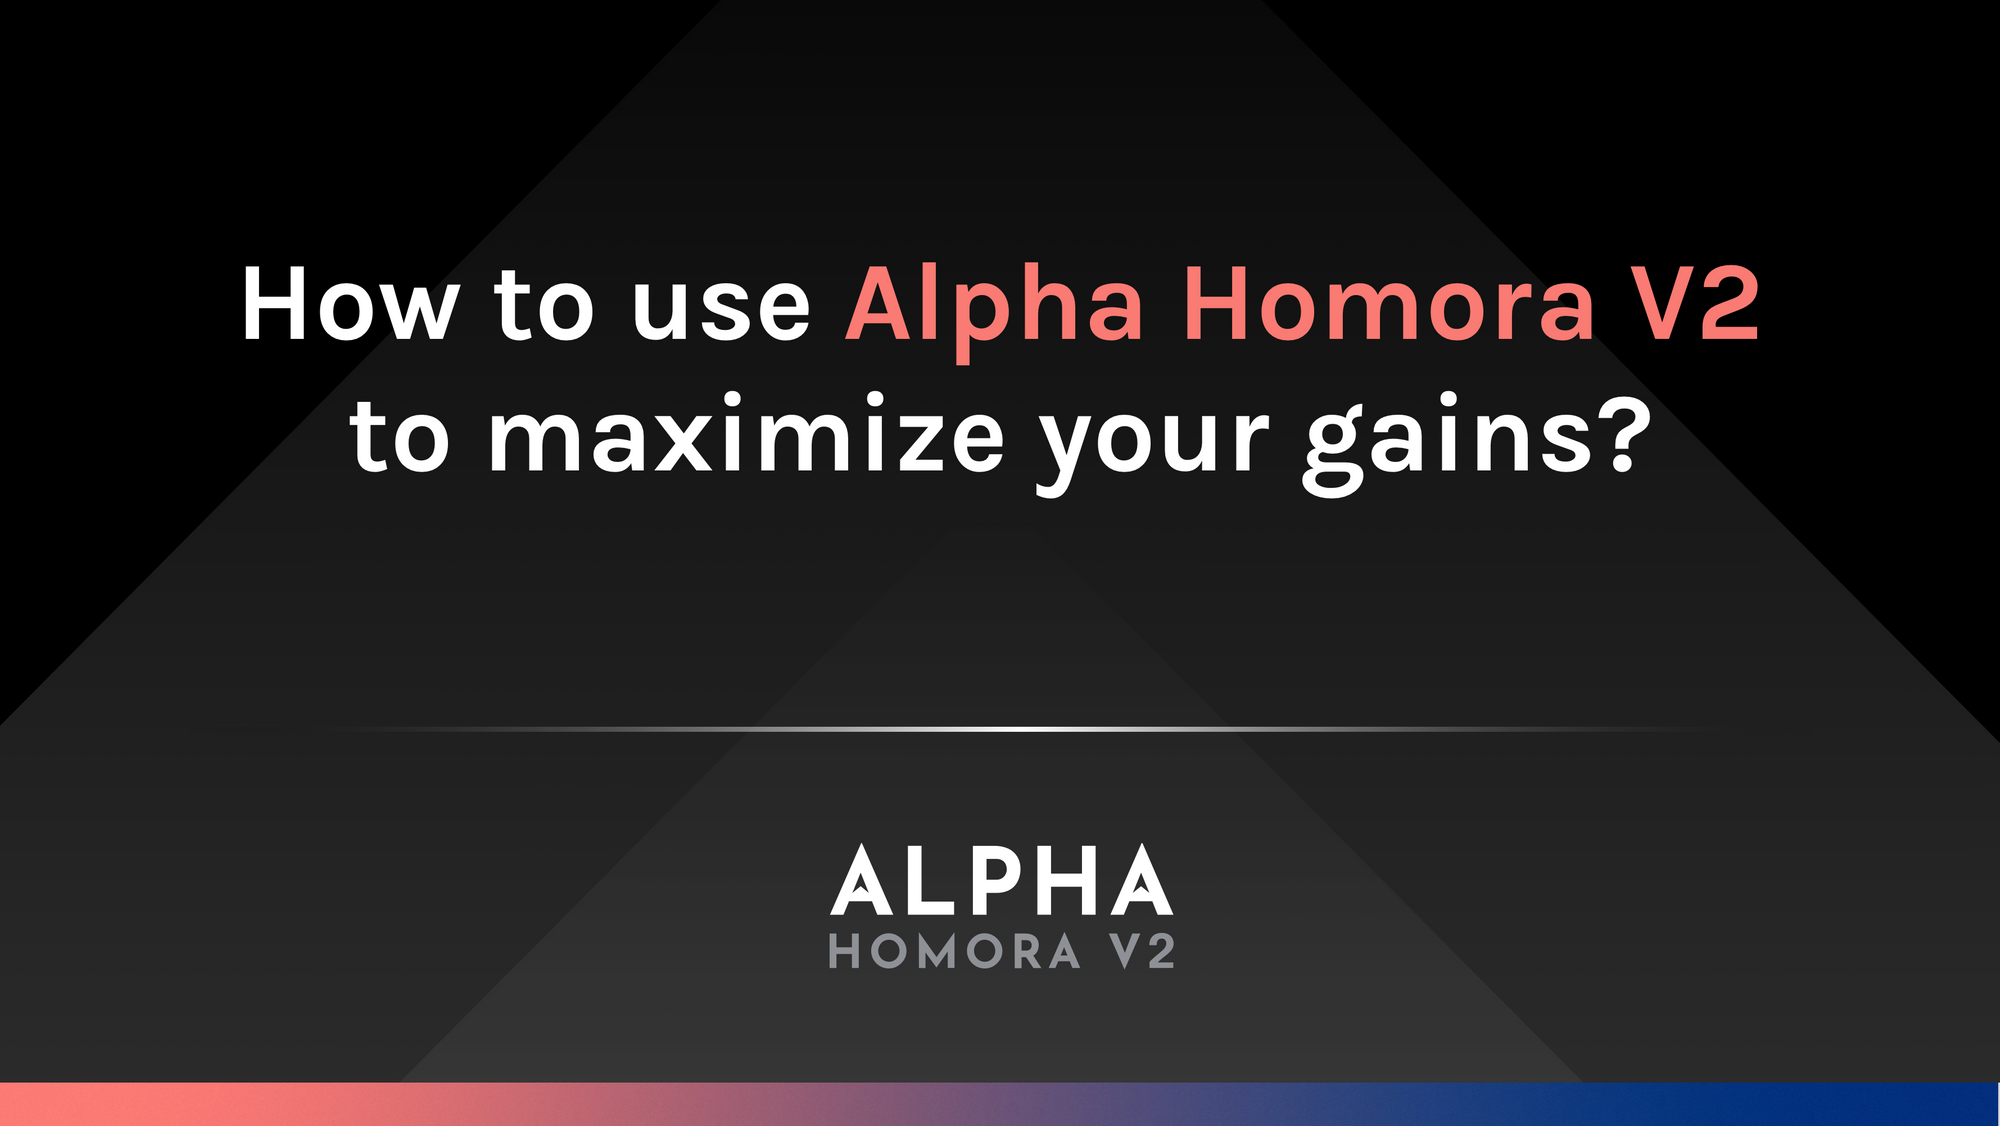 如何使用Alphasdfs Homorasdfs V2来最大化你的收益？